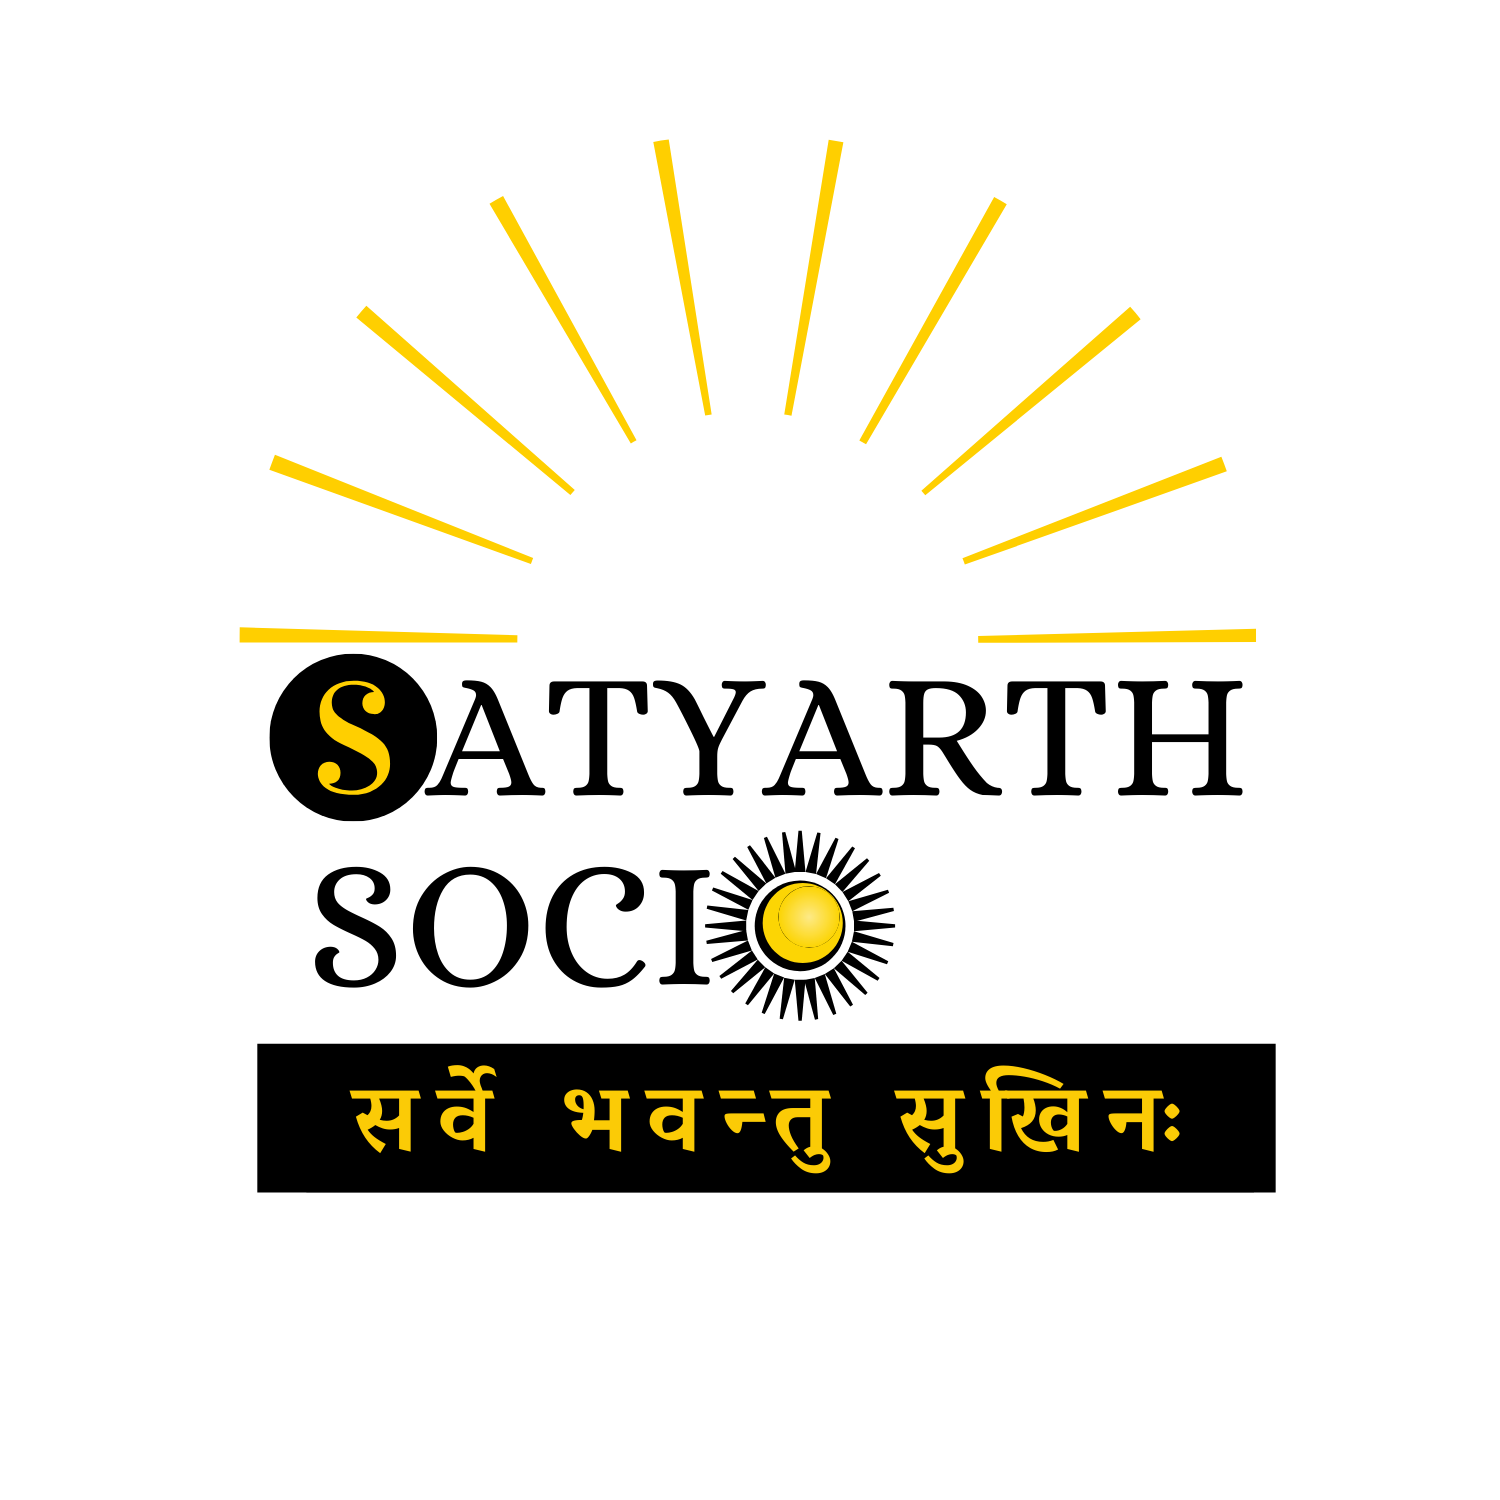 Satyarth Socio logo